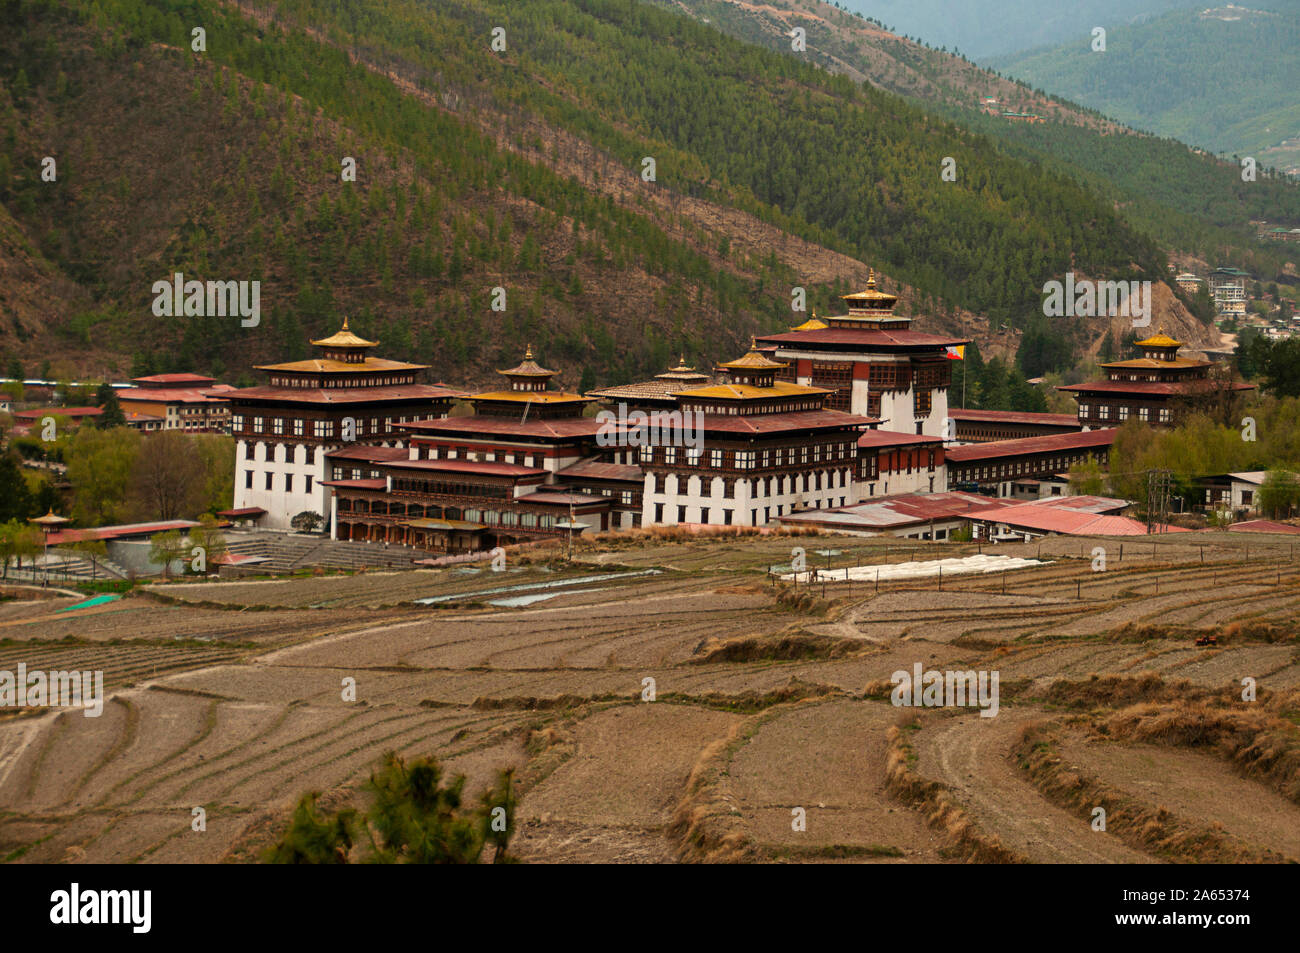 Tashichho Dzong, Buddhist monastery in Thimpu, Bhutan Stock Photo